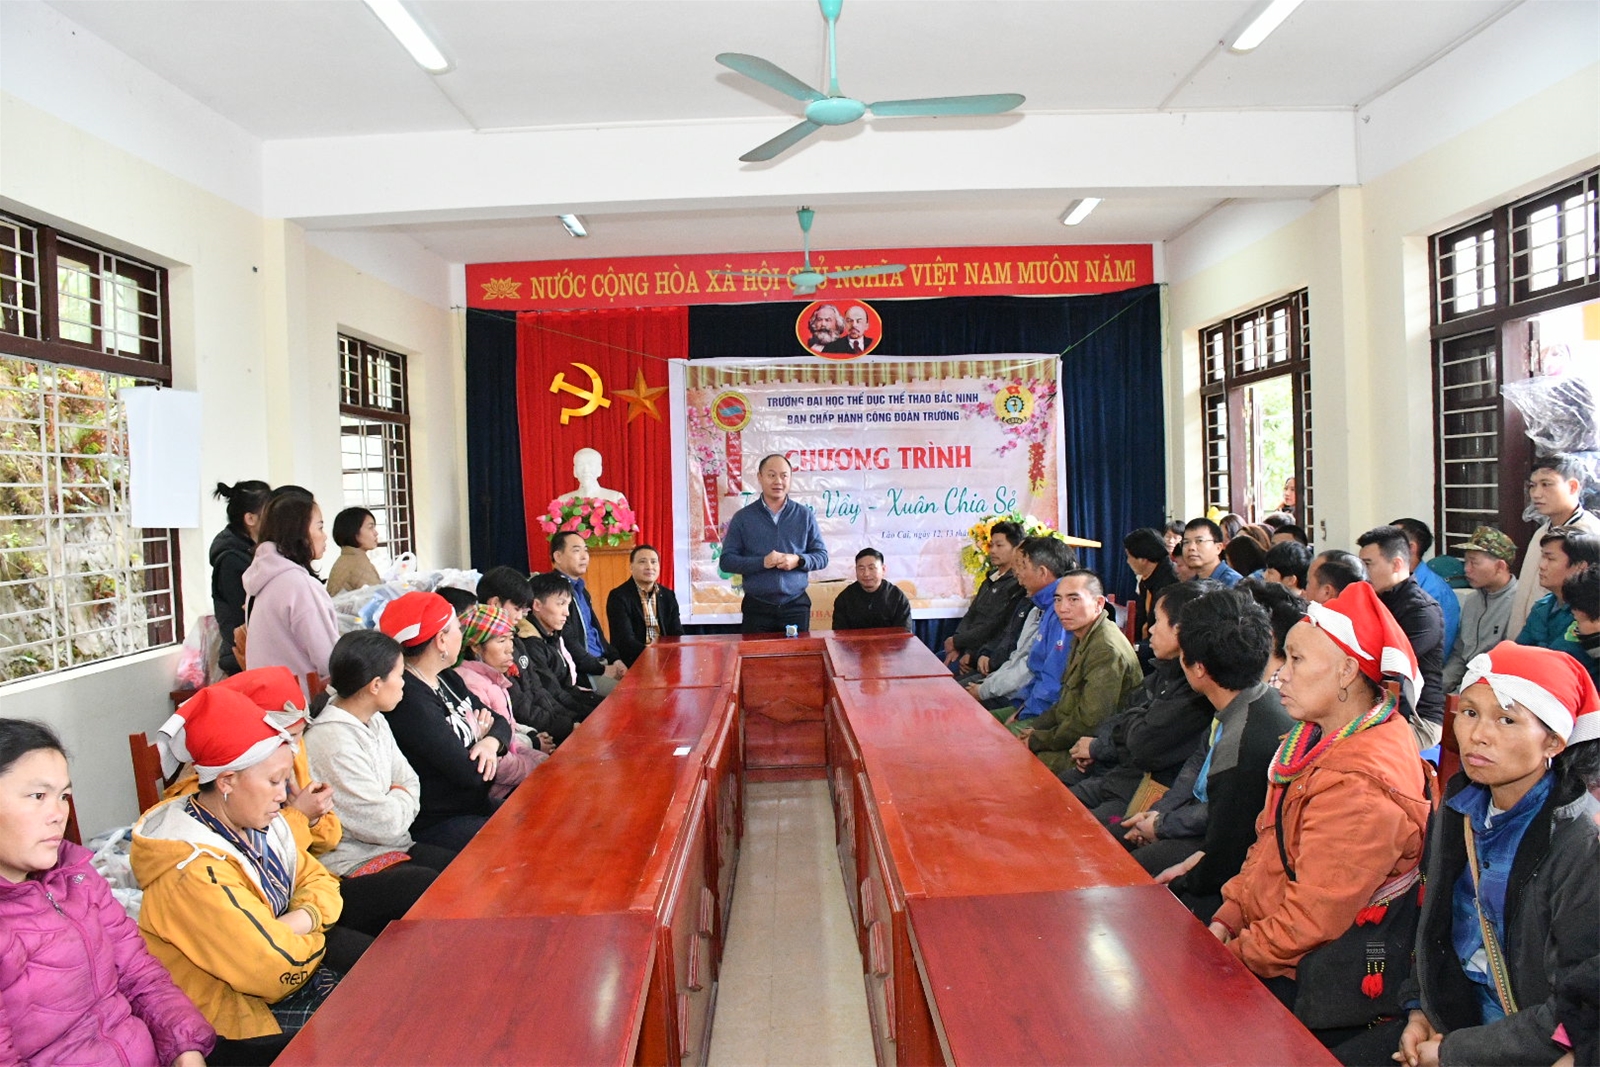 Chương trình từ thiện "Tết Sum Vầy - Xuân Chia Sẻ" của Trường Đại học TDTT Bắc Ninh